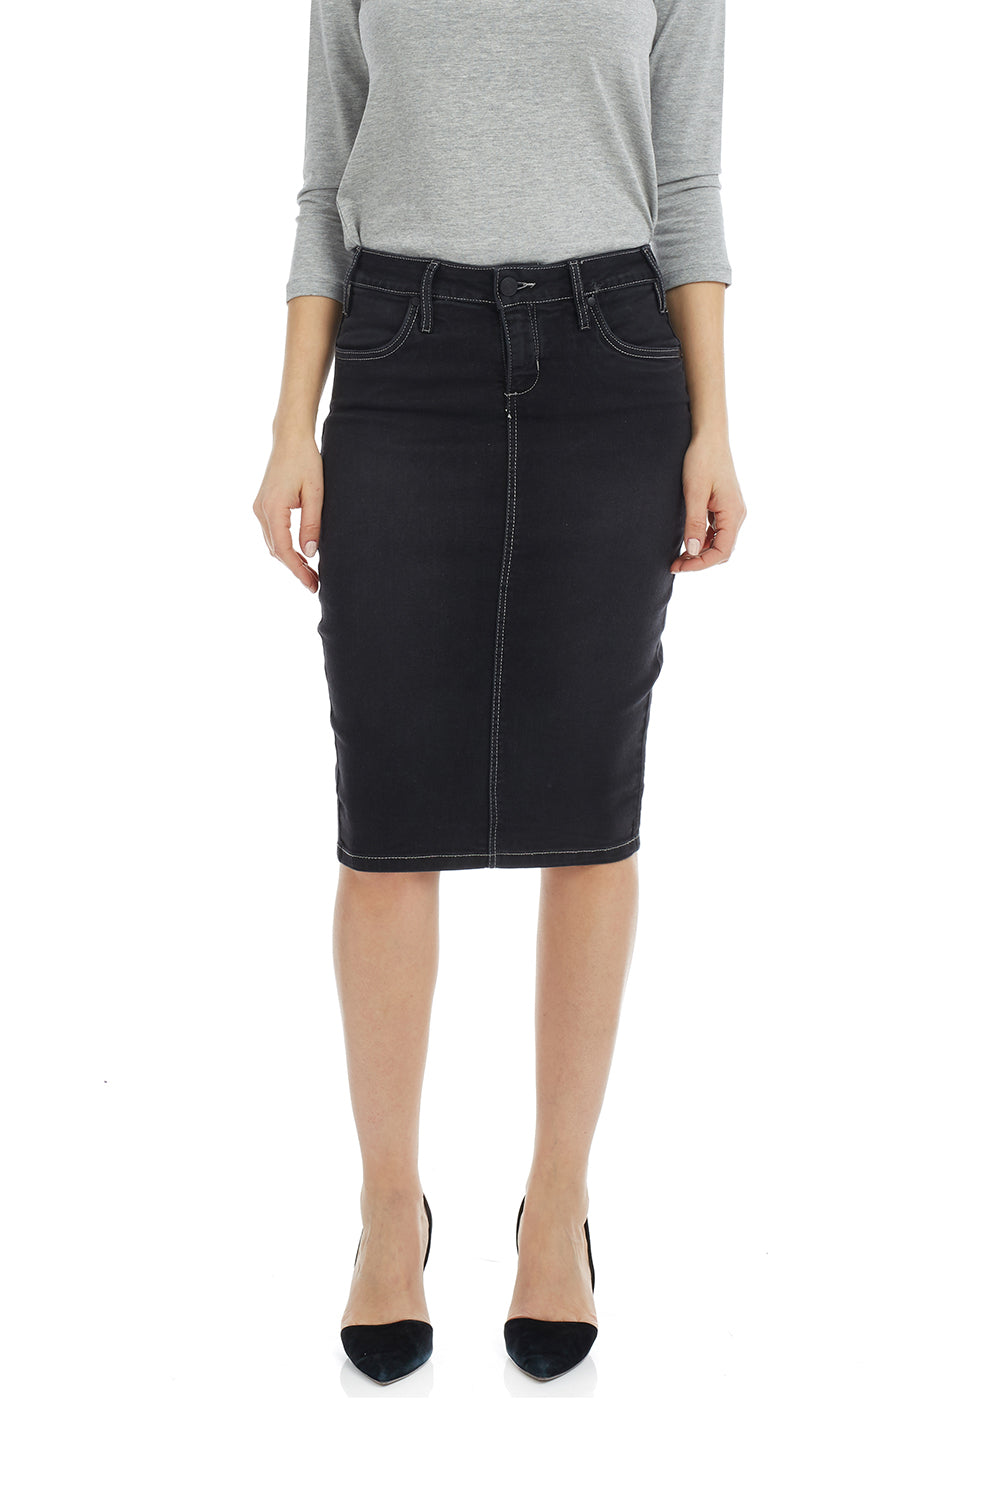 Esteez MIAMI Denim Skirt - Power stretch Jean Skirt with Tummy Control for WOMEN